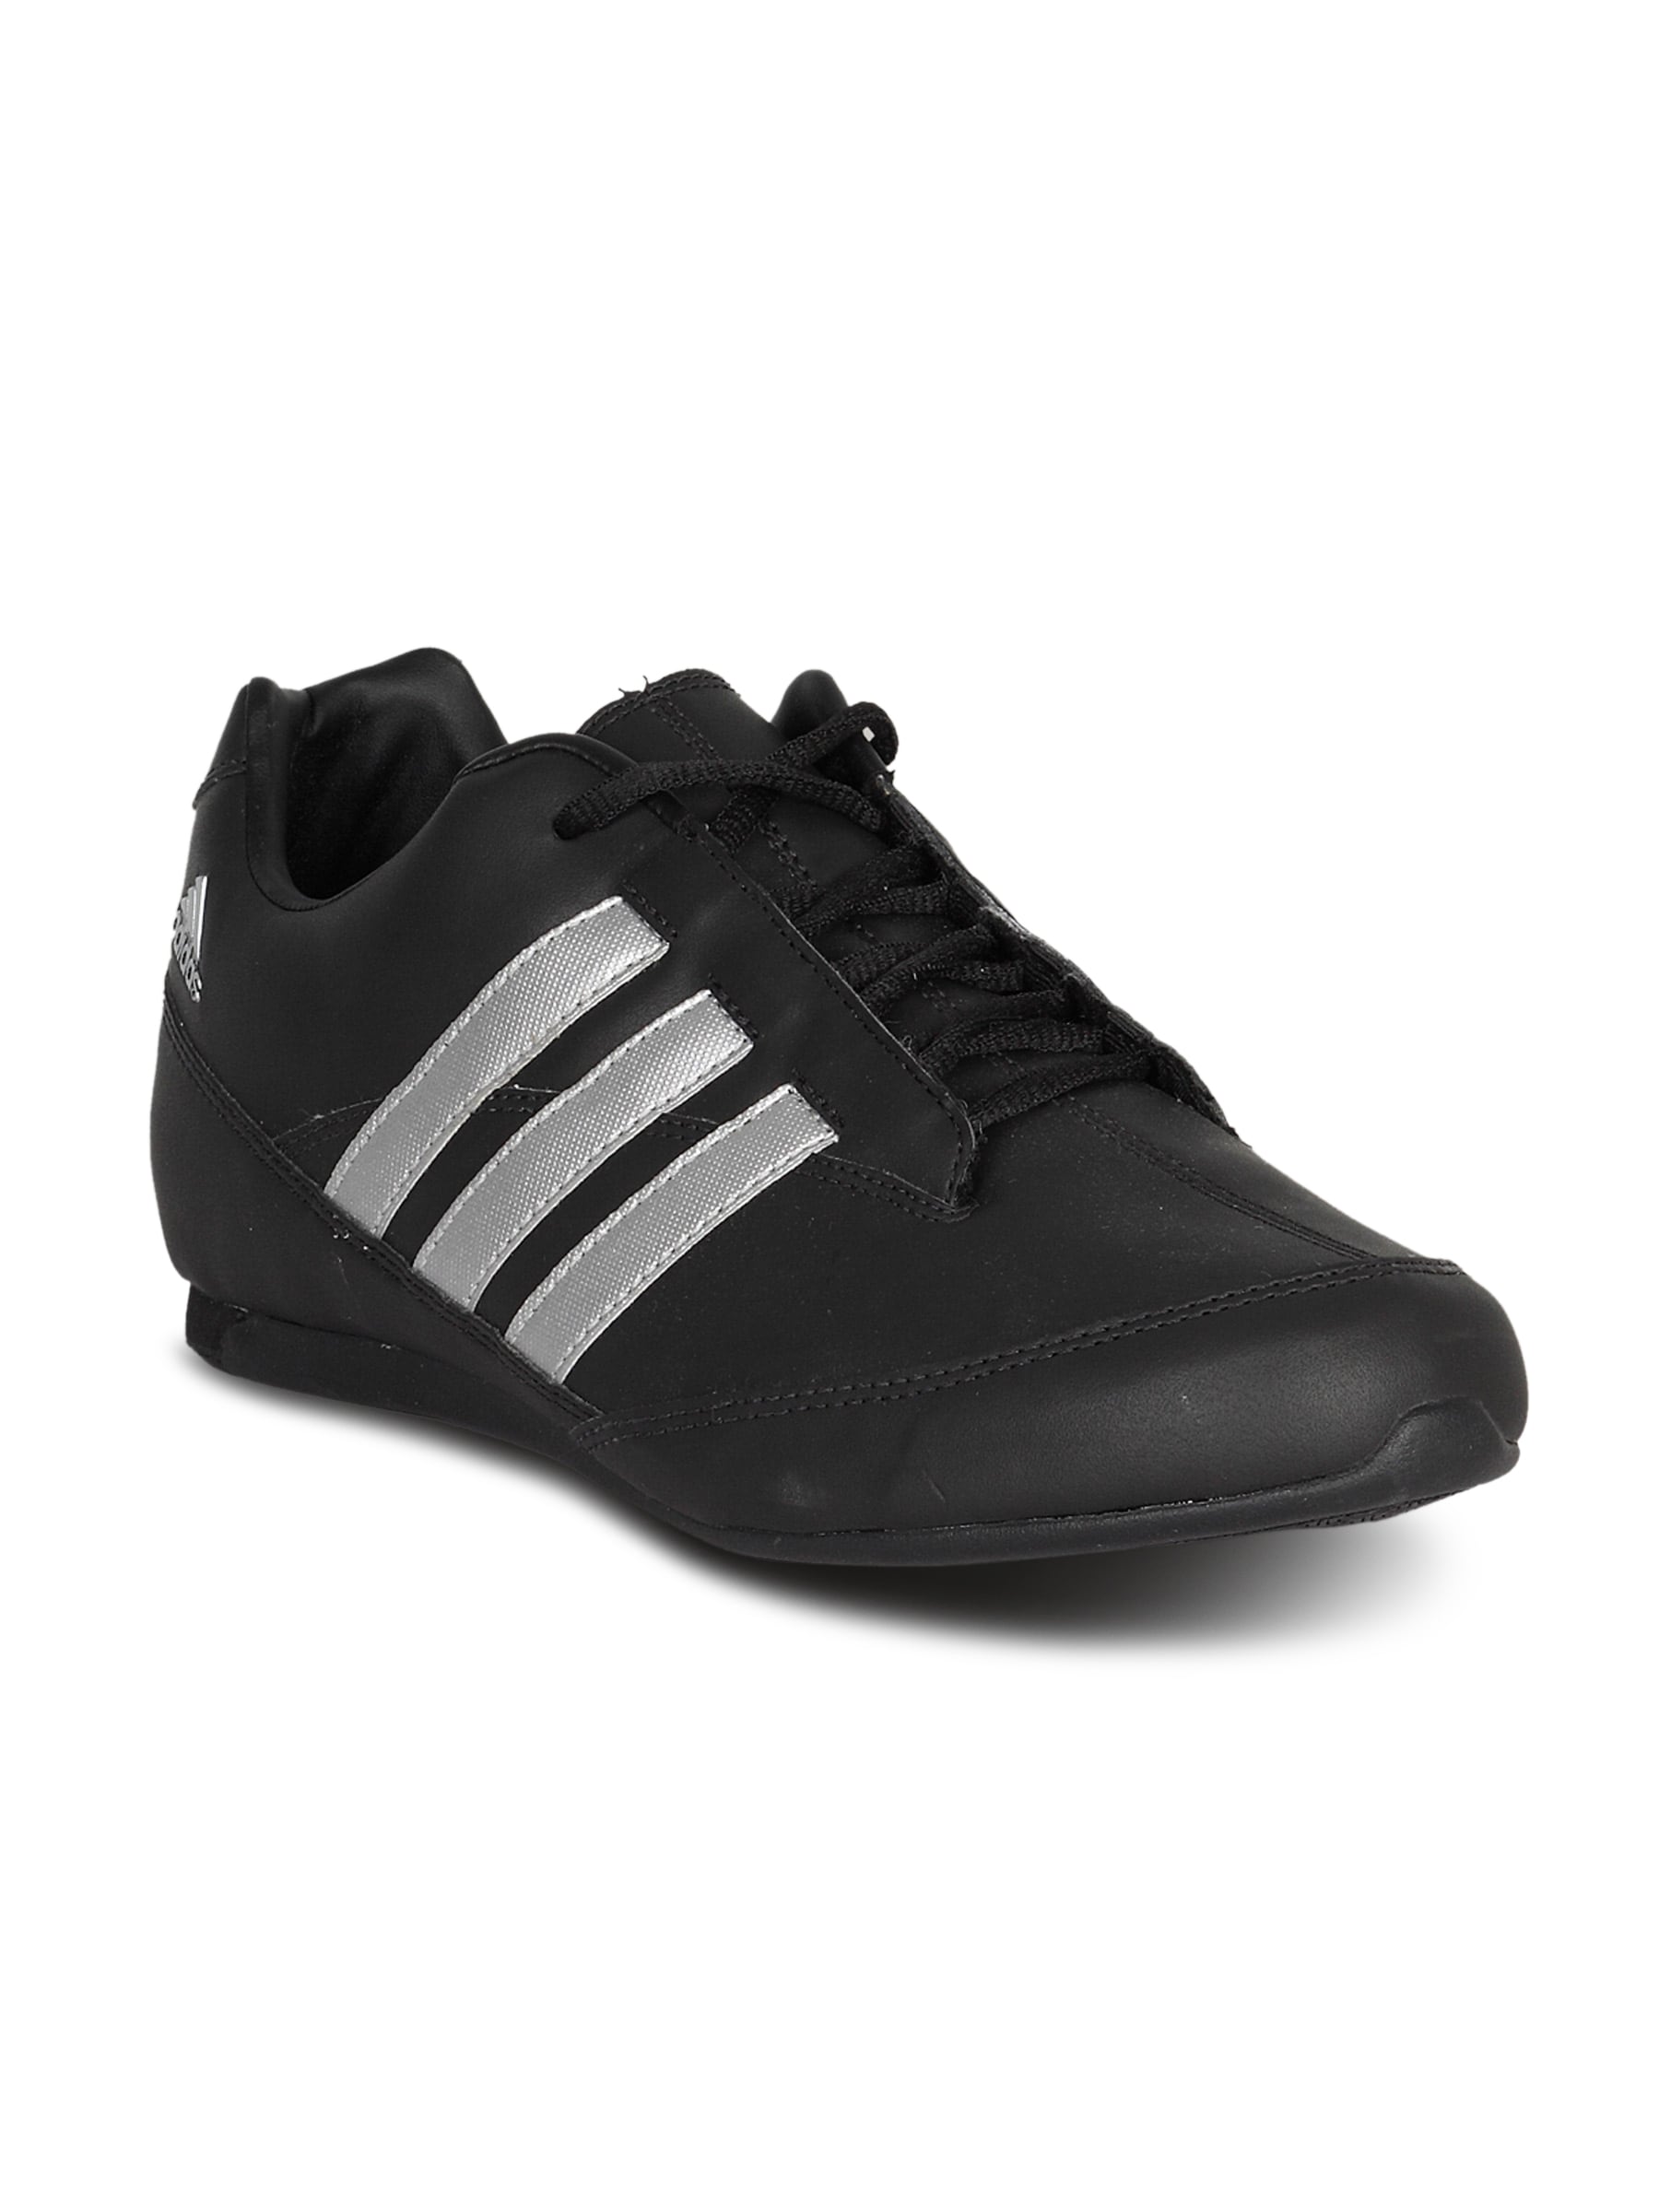 ADIDAS Men's Adi Stylite Low Black Silver Shoe